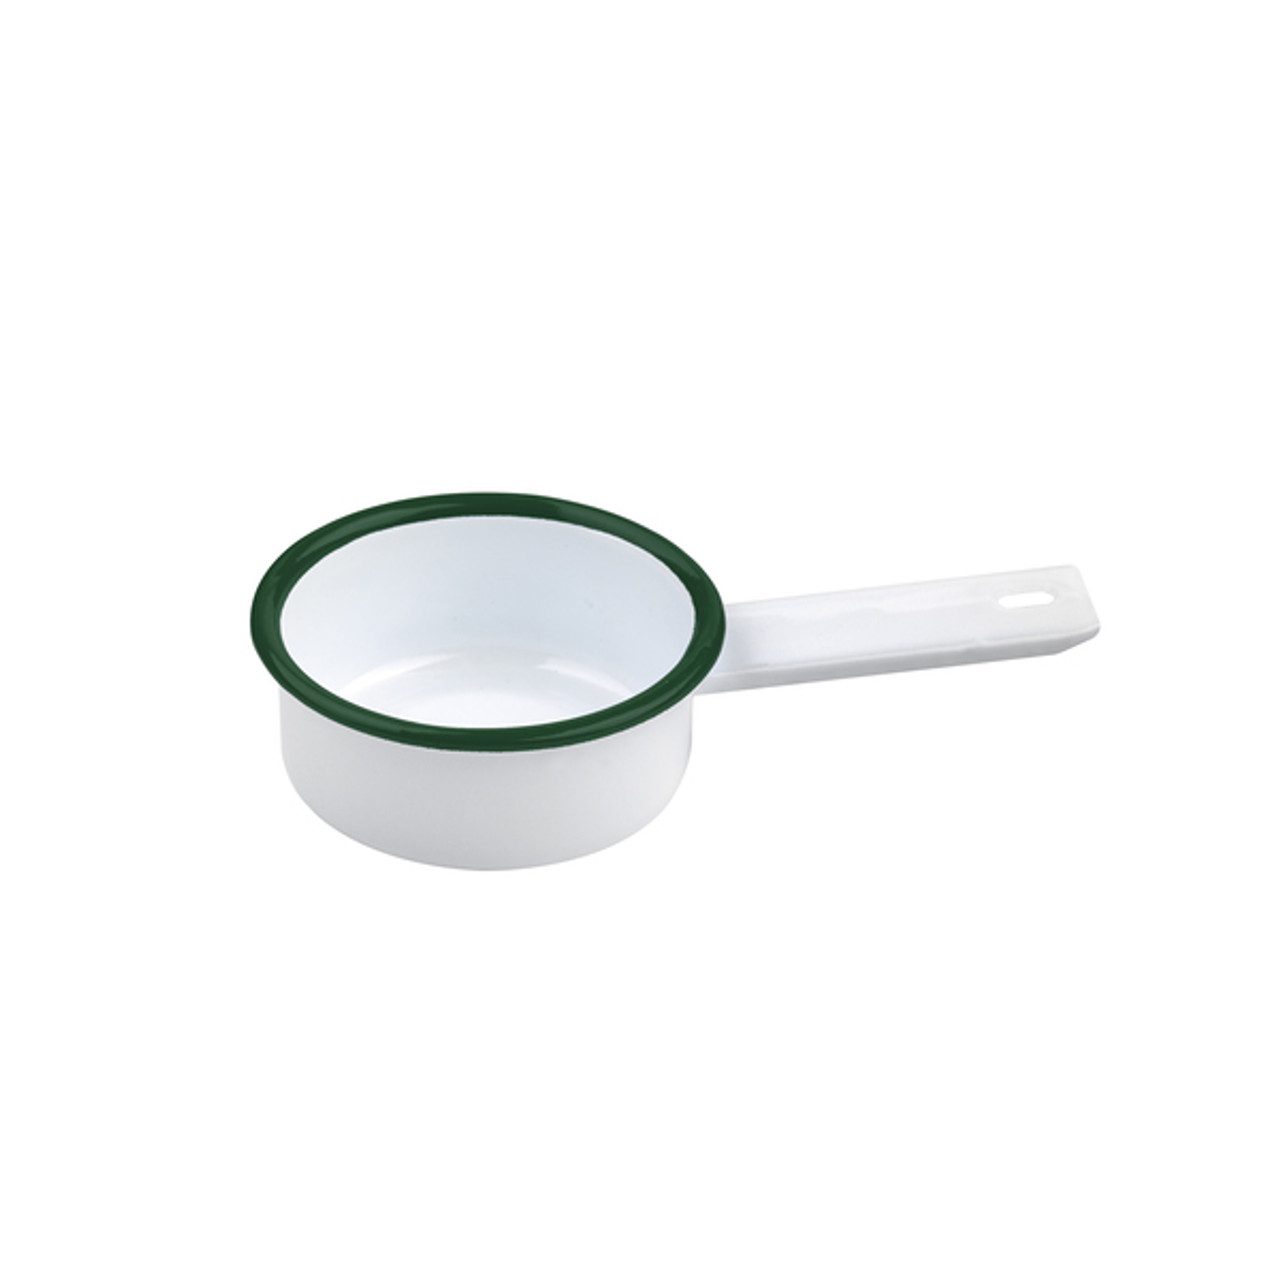 Enamel reusable mini saucepan white w/green rim 3oz H:1.18in - 12 pcs